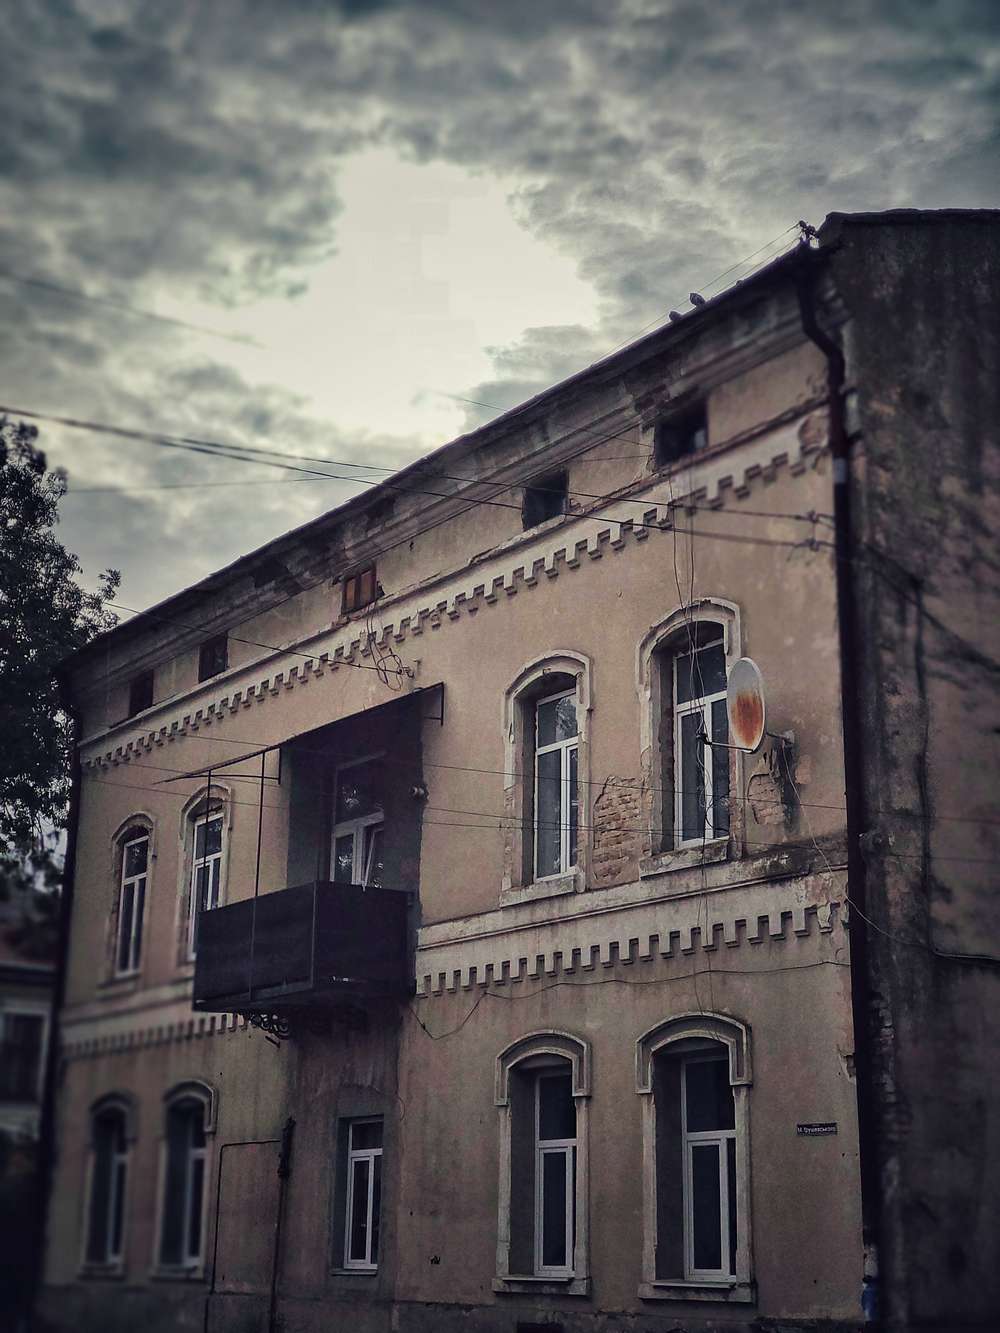 Кам’янка-Бузька: батьківщина українського театру, «чорний парк» Бандери, старе місто, що дихає історією